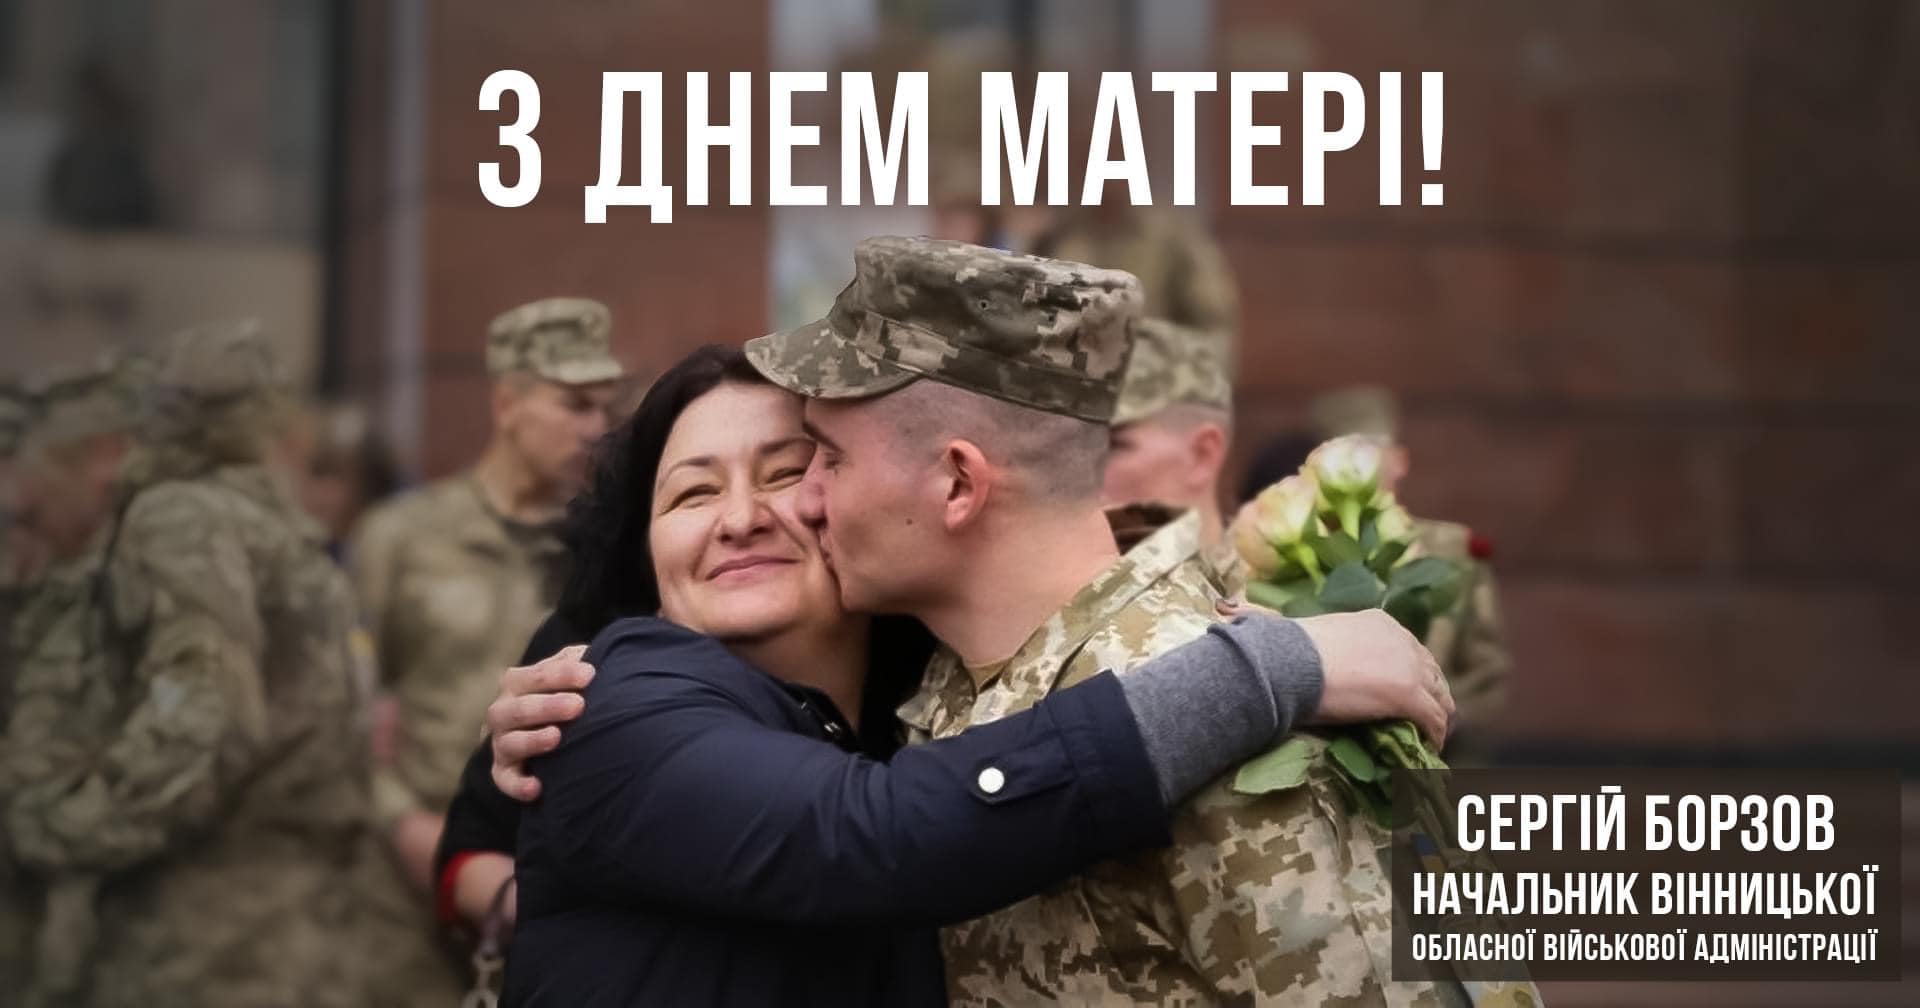 Щорічно в другу неділю травня в Україні відзначають День матері